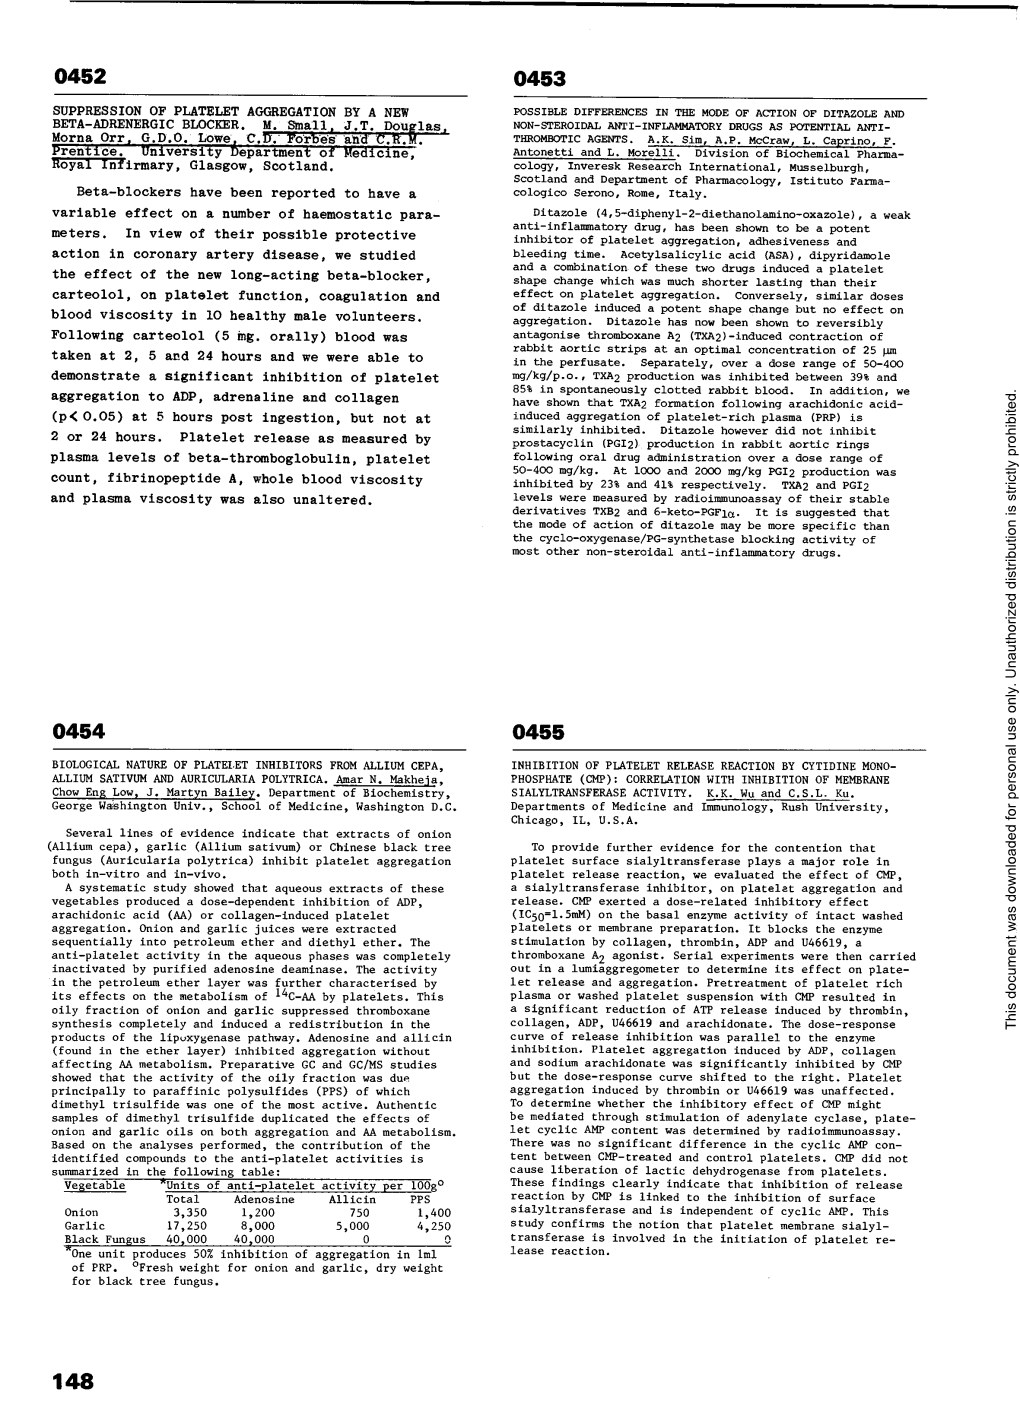 Biological Nature of Platelet Inhibitors from Allium Cepa, Allium Sativum and Auricularia Polytrica